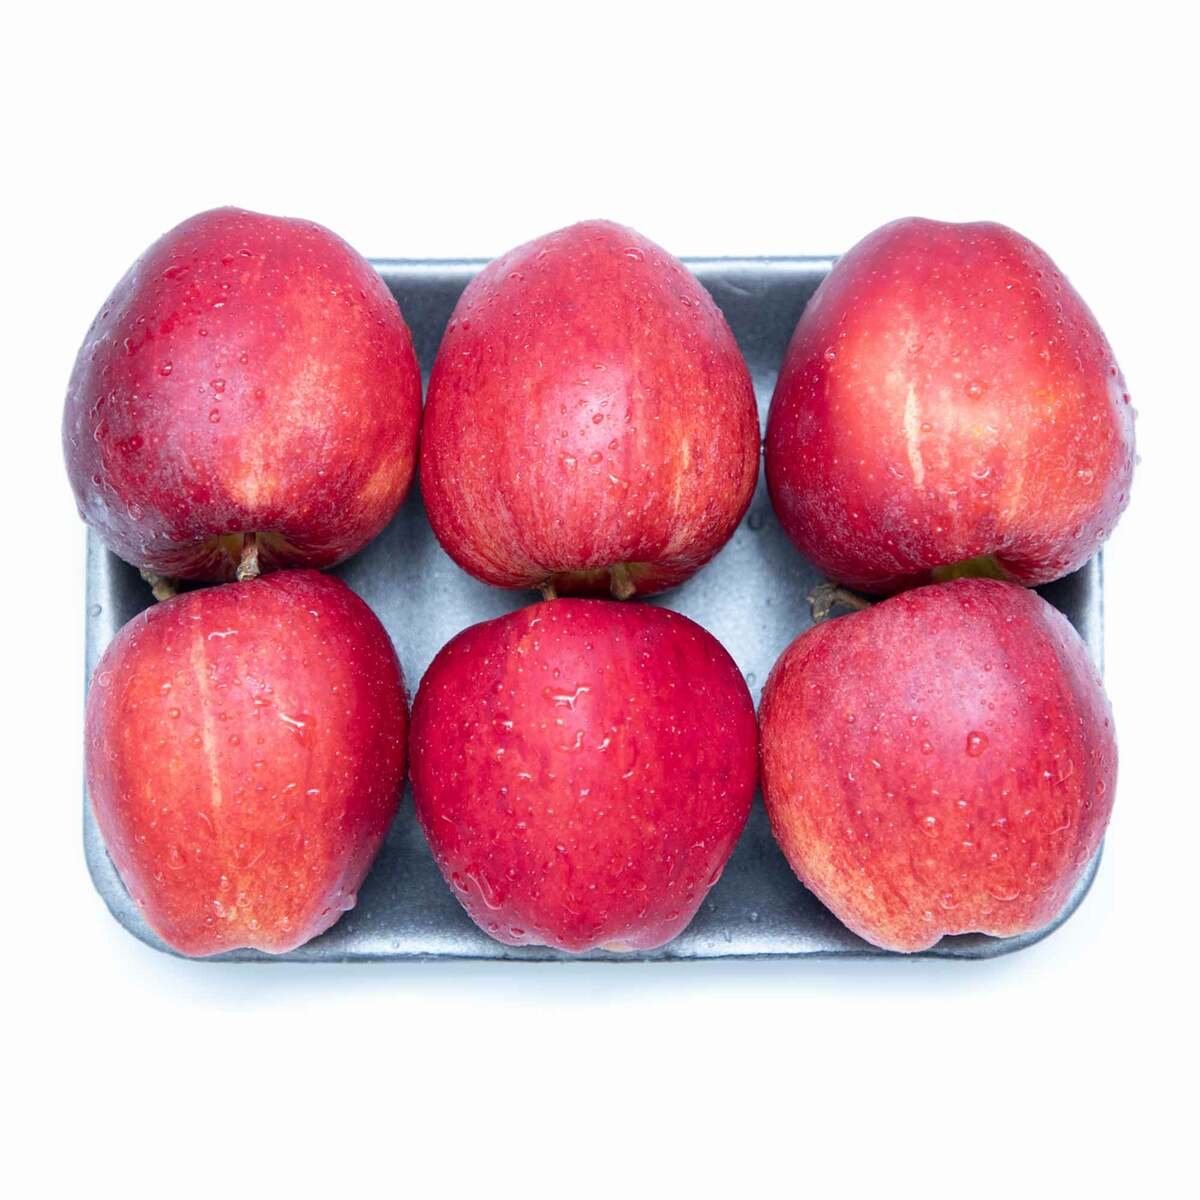 تفاح رويال جالا المملكة المتحدة ٦ حبات